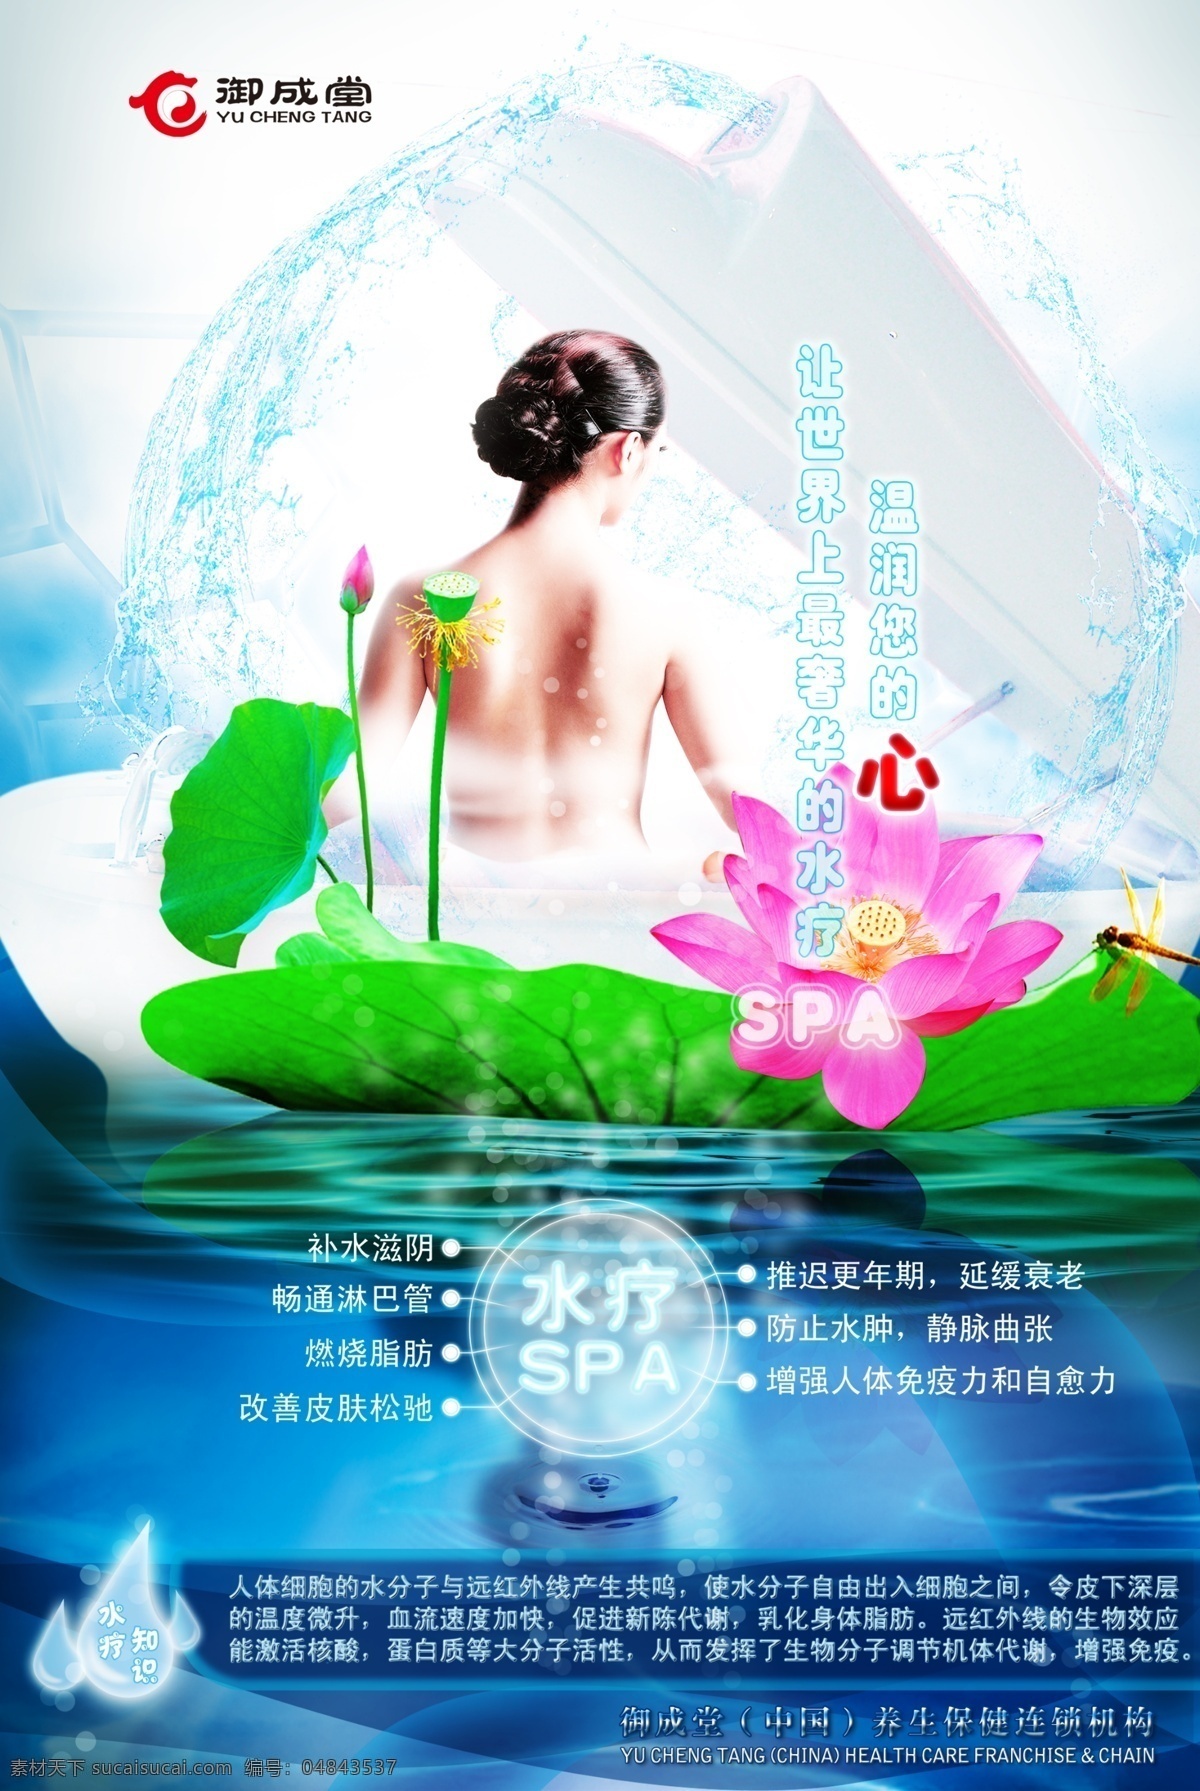 女性 水疗 spa 海报 御成堂 女性护理 水疗spa 广告海报 美容 养生 保健 psd素材 红色